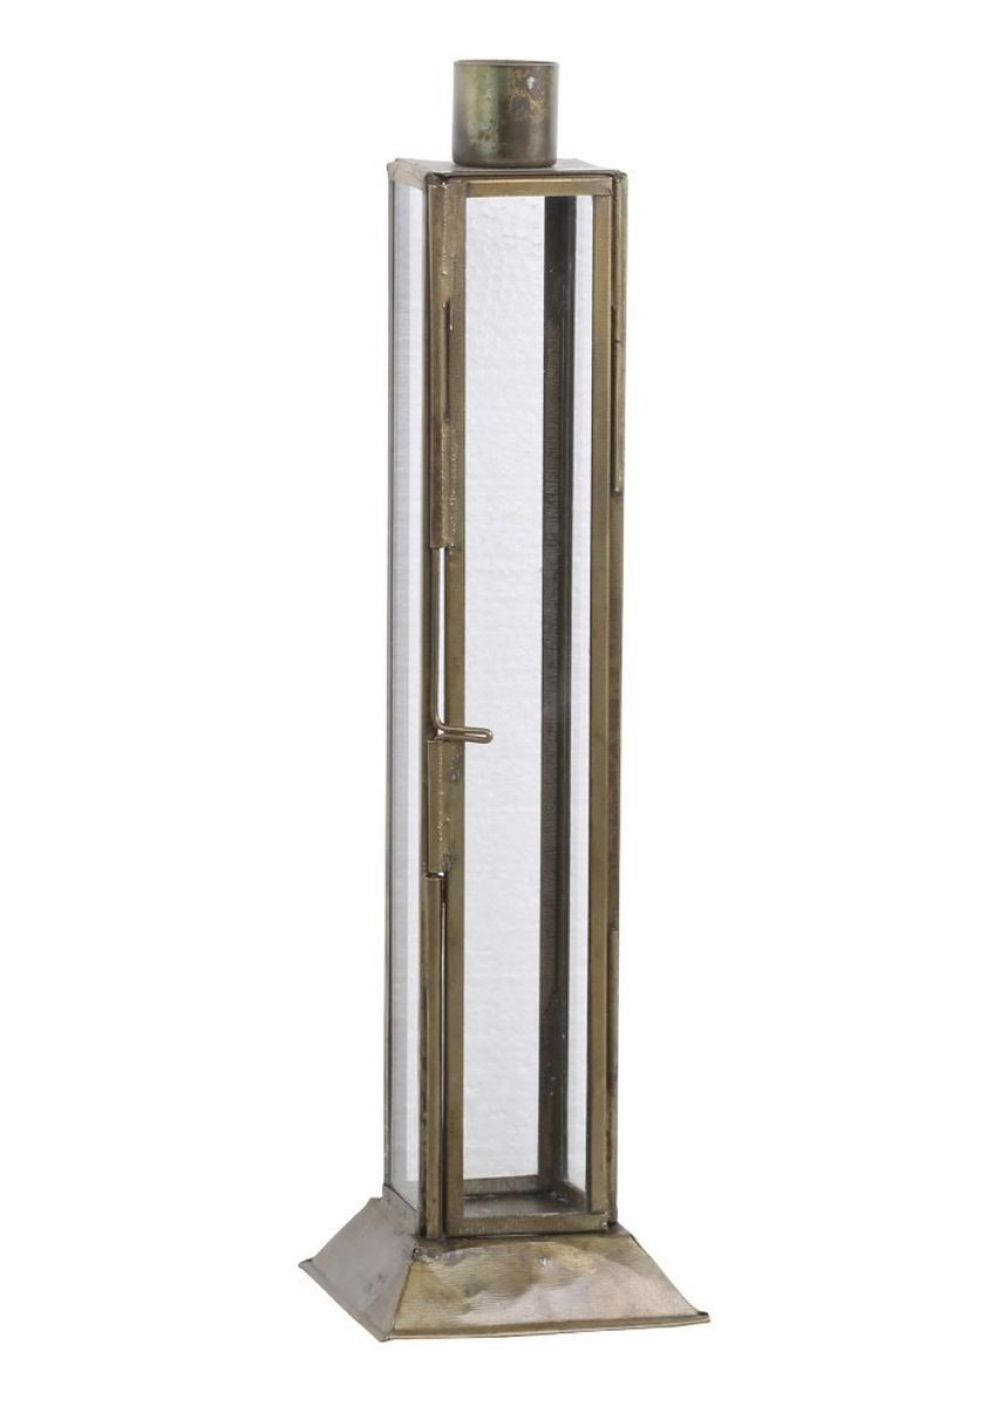 Mosazný antik kovový svícen na úzkou svíčku Forei  - 6.5*6.5*22cm  Chic Antique - LaHome - vintage dekorace